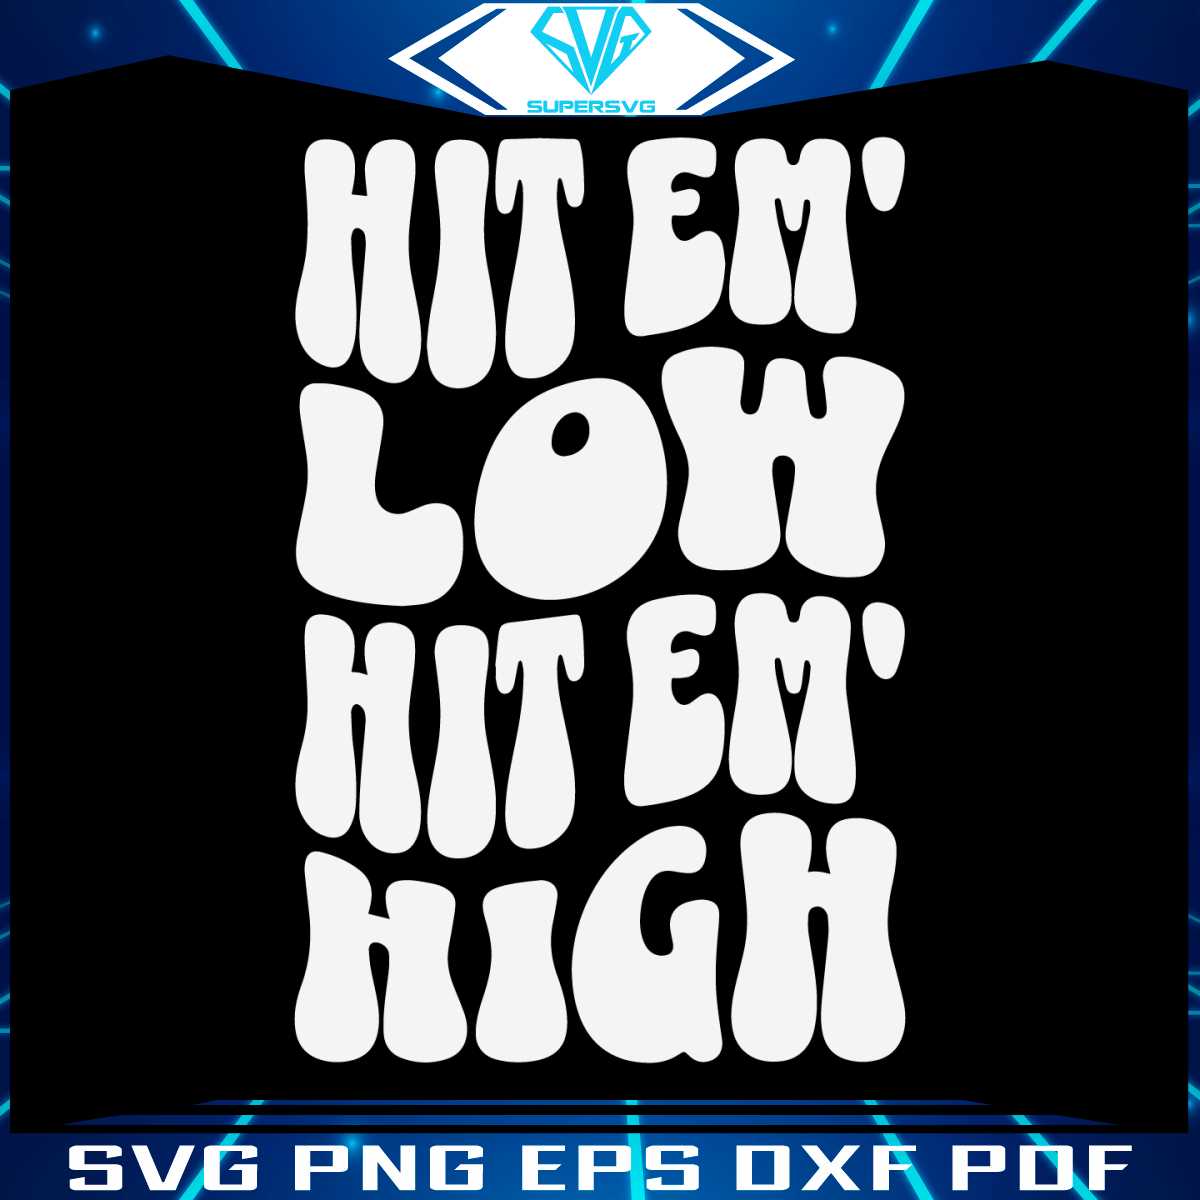 hit-em-low-hit-em-high-philly-fans-svg-digital-file